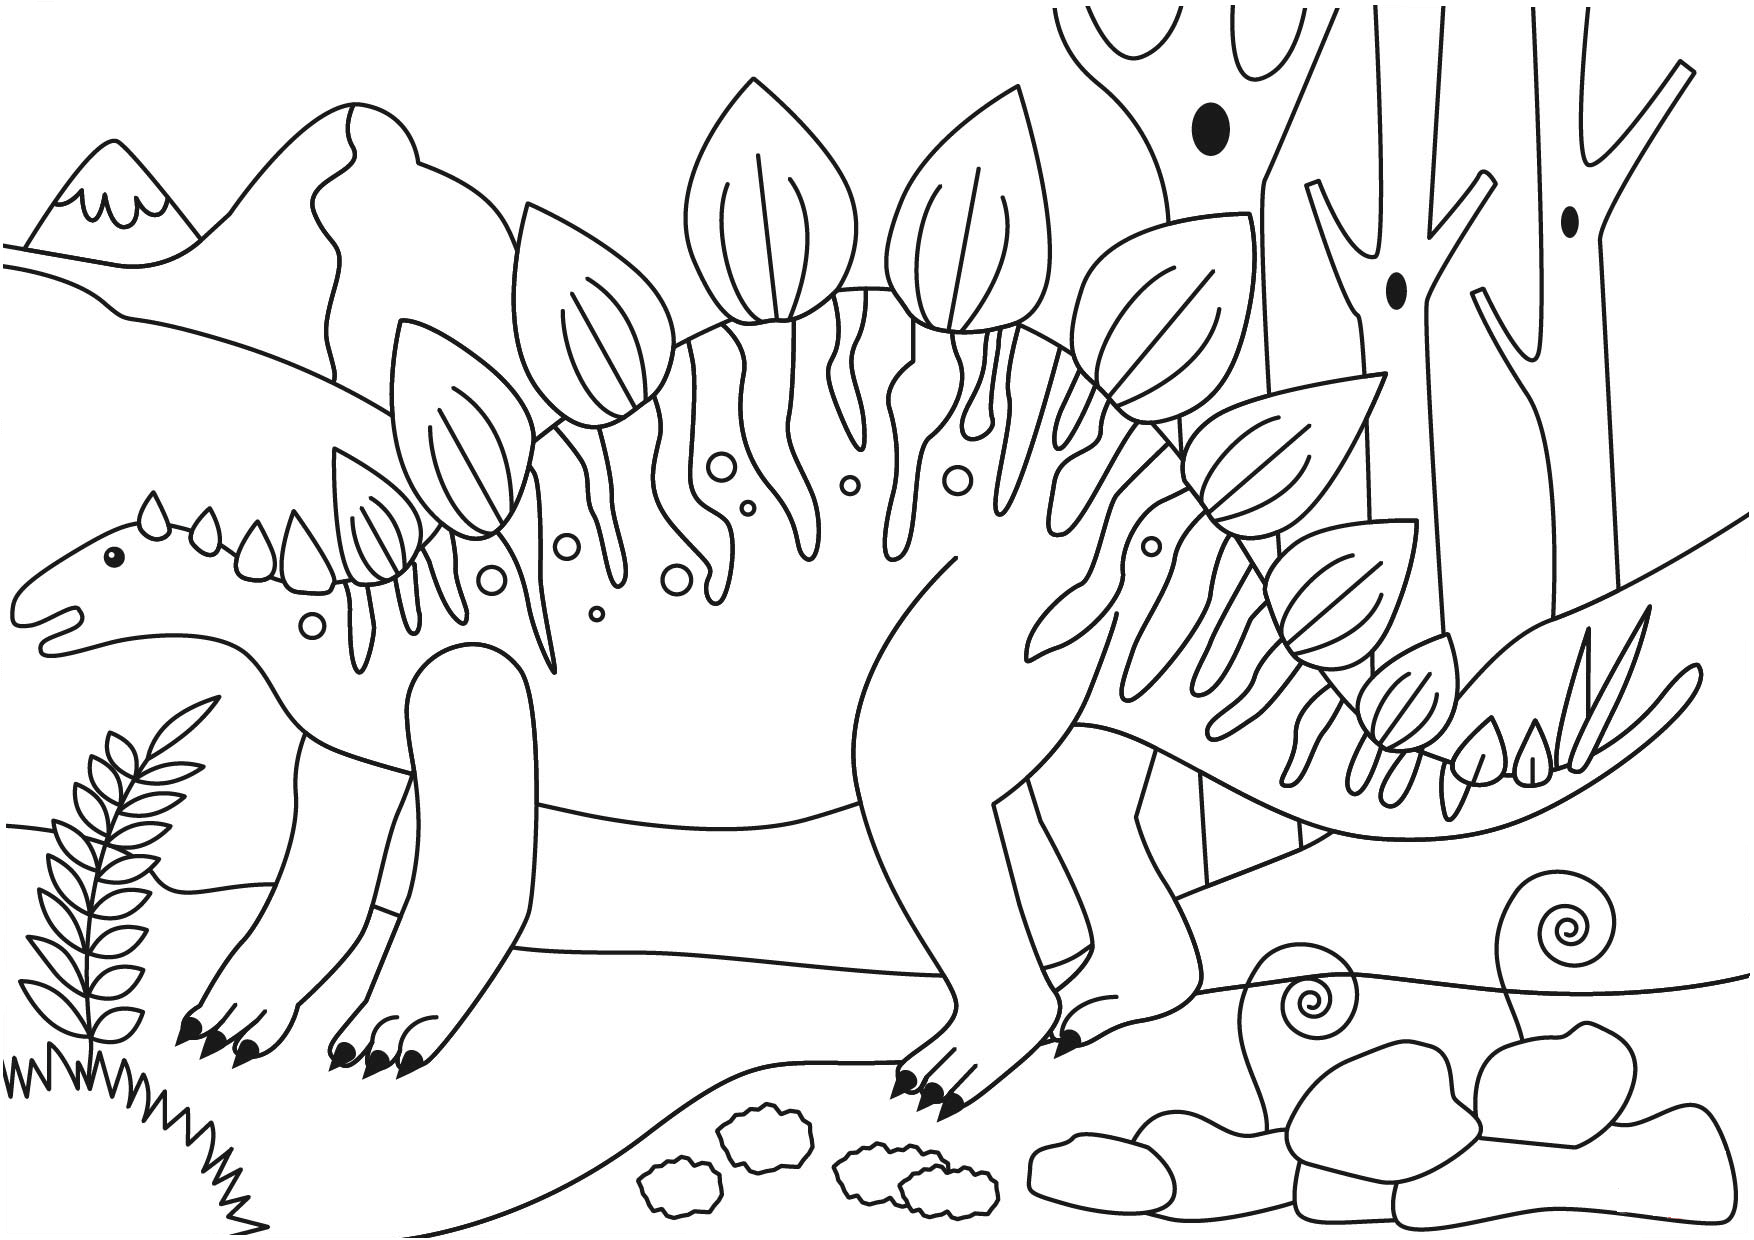 Динозавры для раскрашивания. Раскраска динозавр Стегозавр. Раскраска мир Юрского периода Стегозавр. Стегозавр раскраска для детей. Разукрашка Стегозавра динозавра.